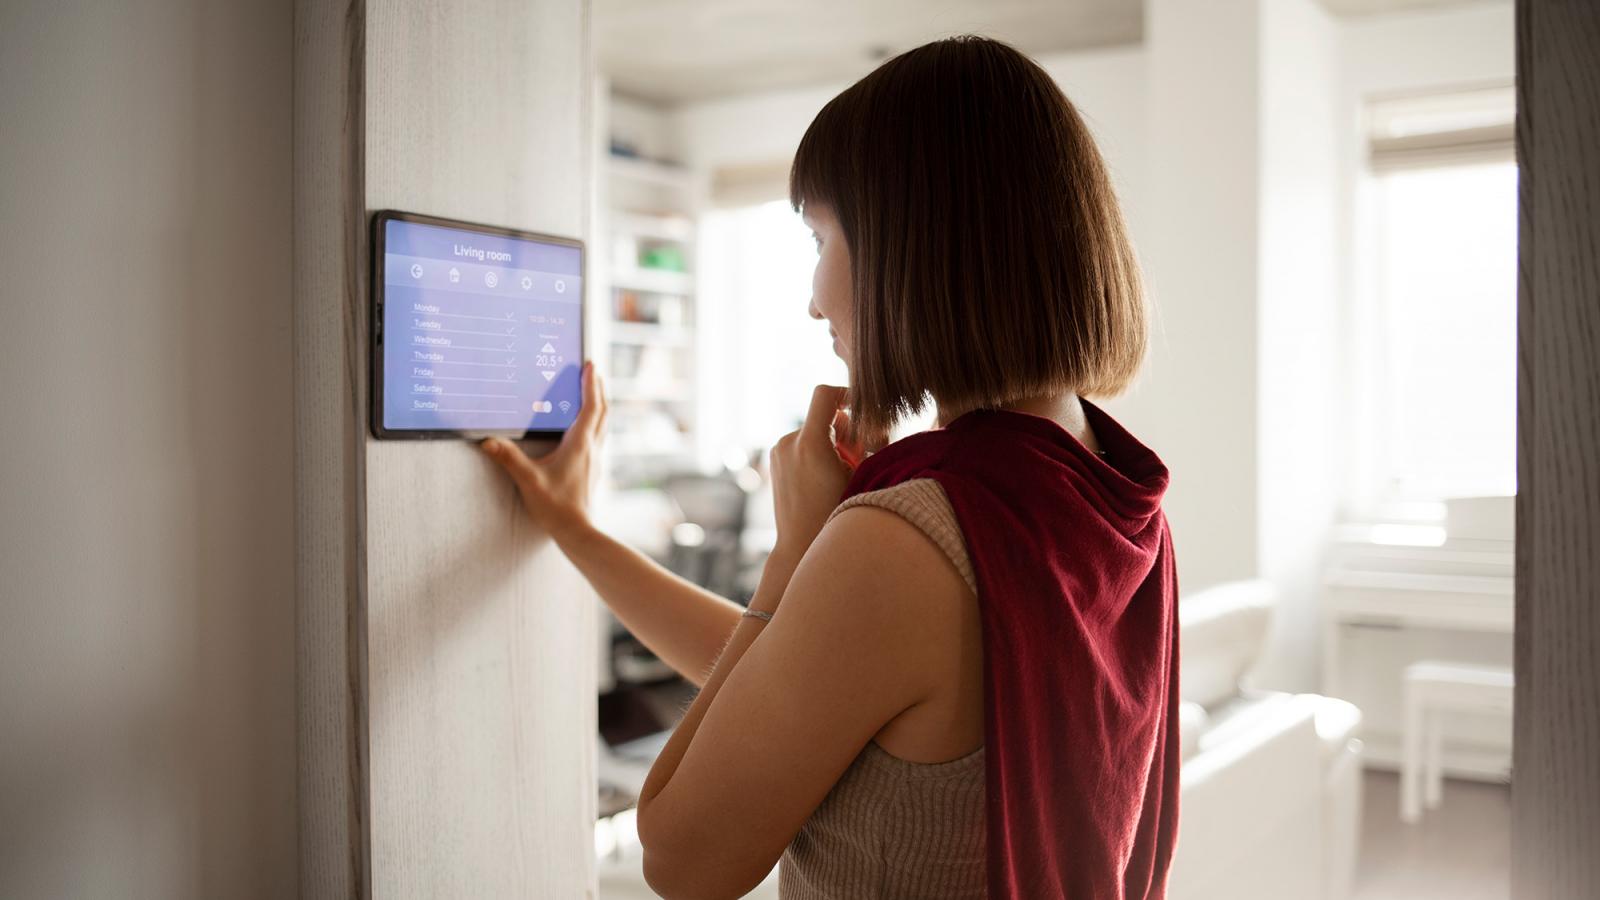 Eine Frau steuert ihr Smart Home per Tablet, das an der Wand angebracht ist